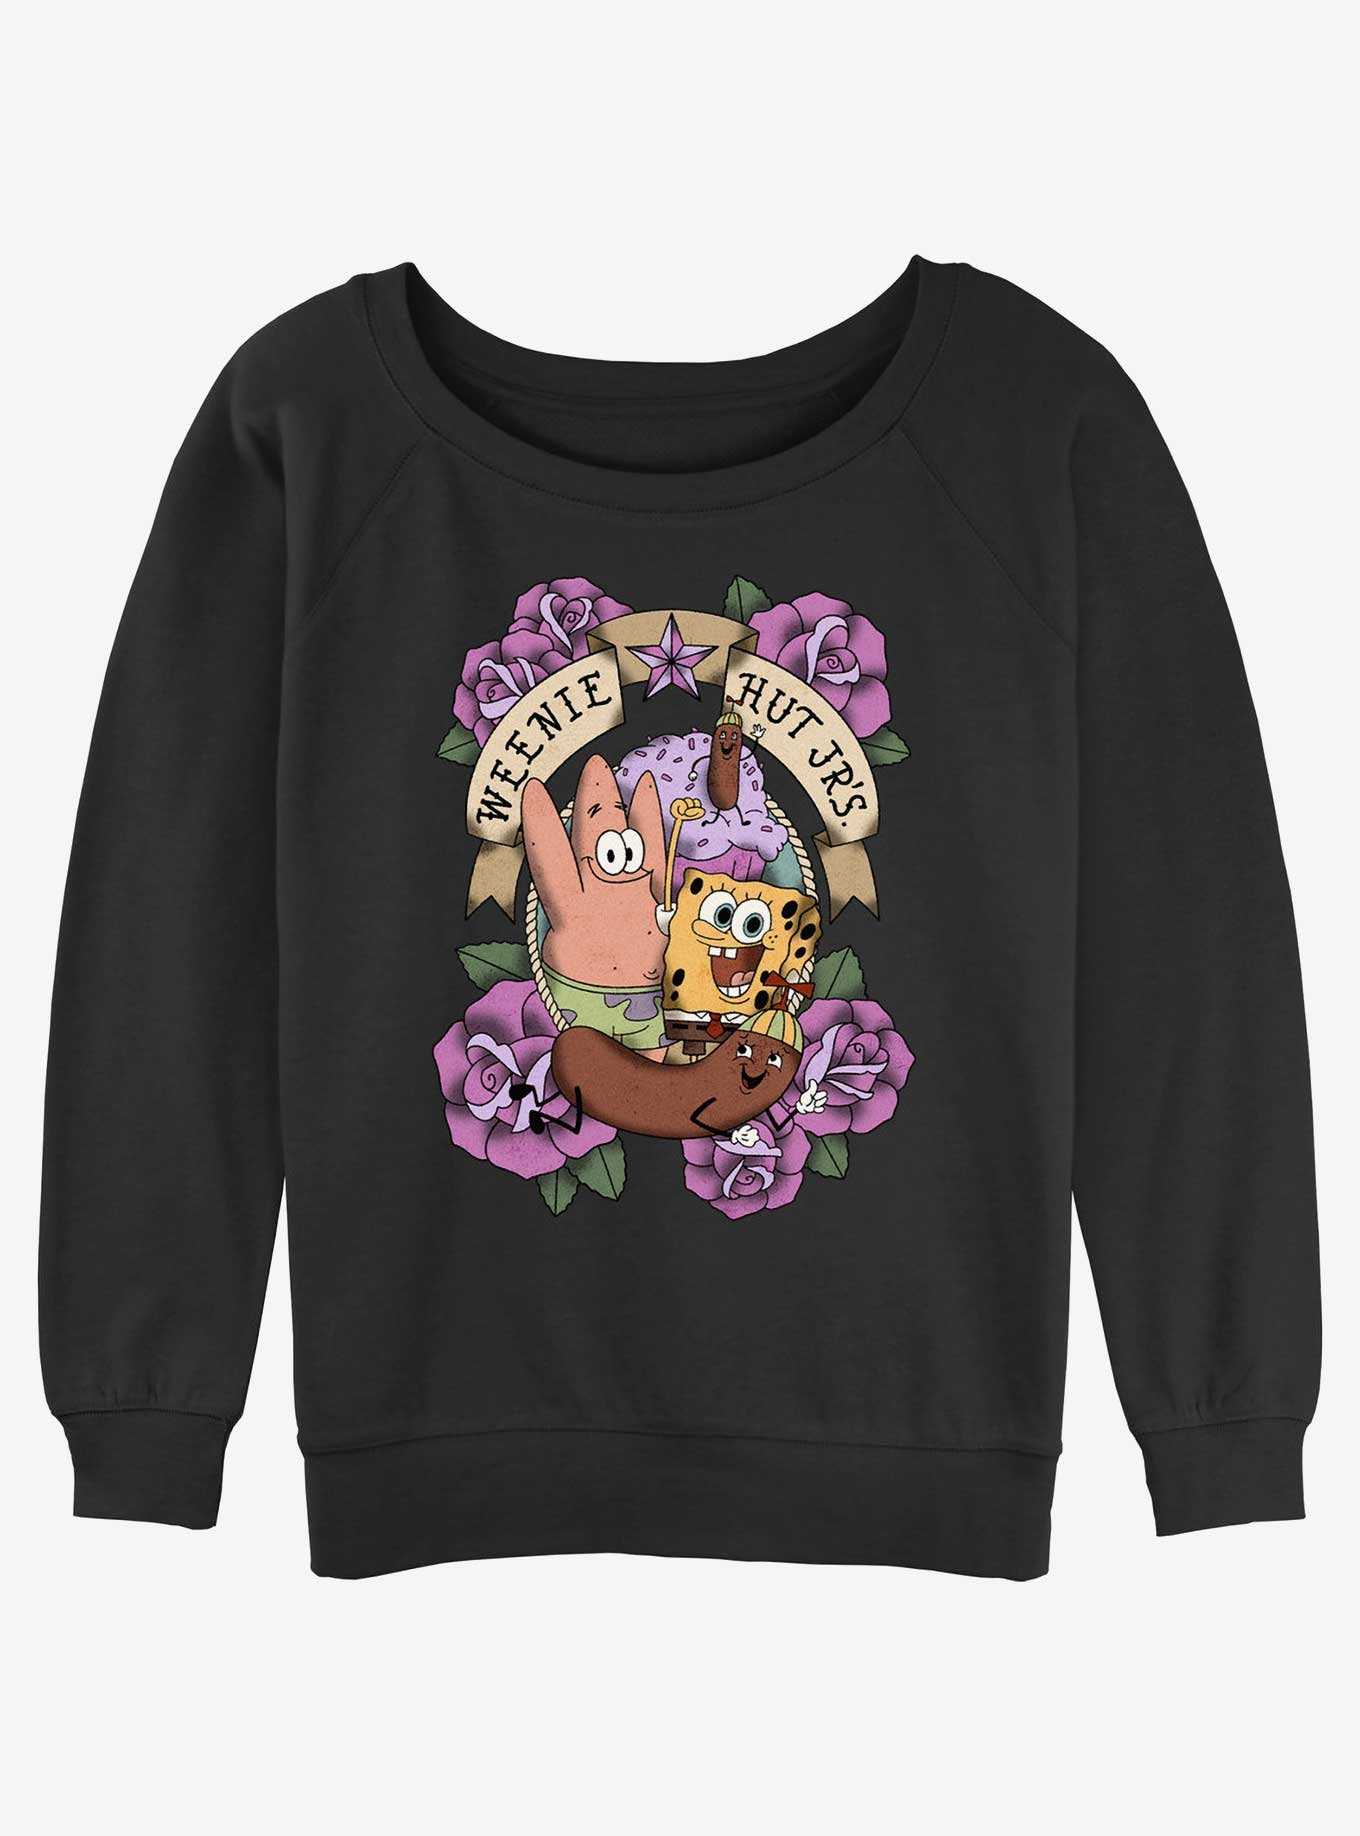 Spongebob Squarepants Weenie Hut Jr's Girls Slouchy Sweatshirt, , hi-res